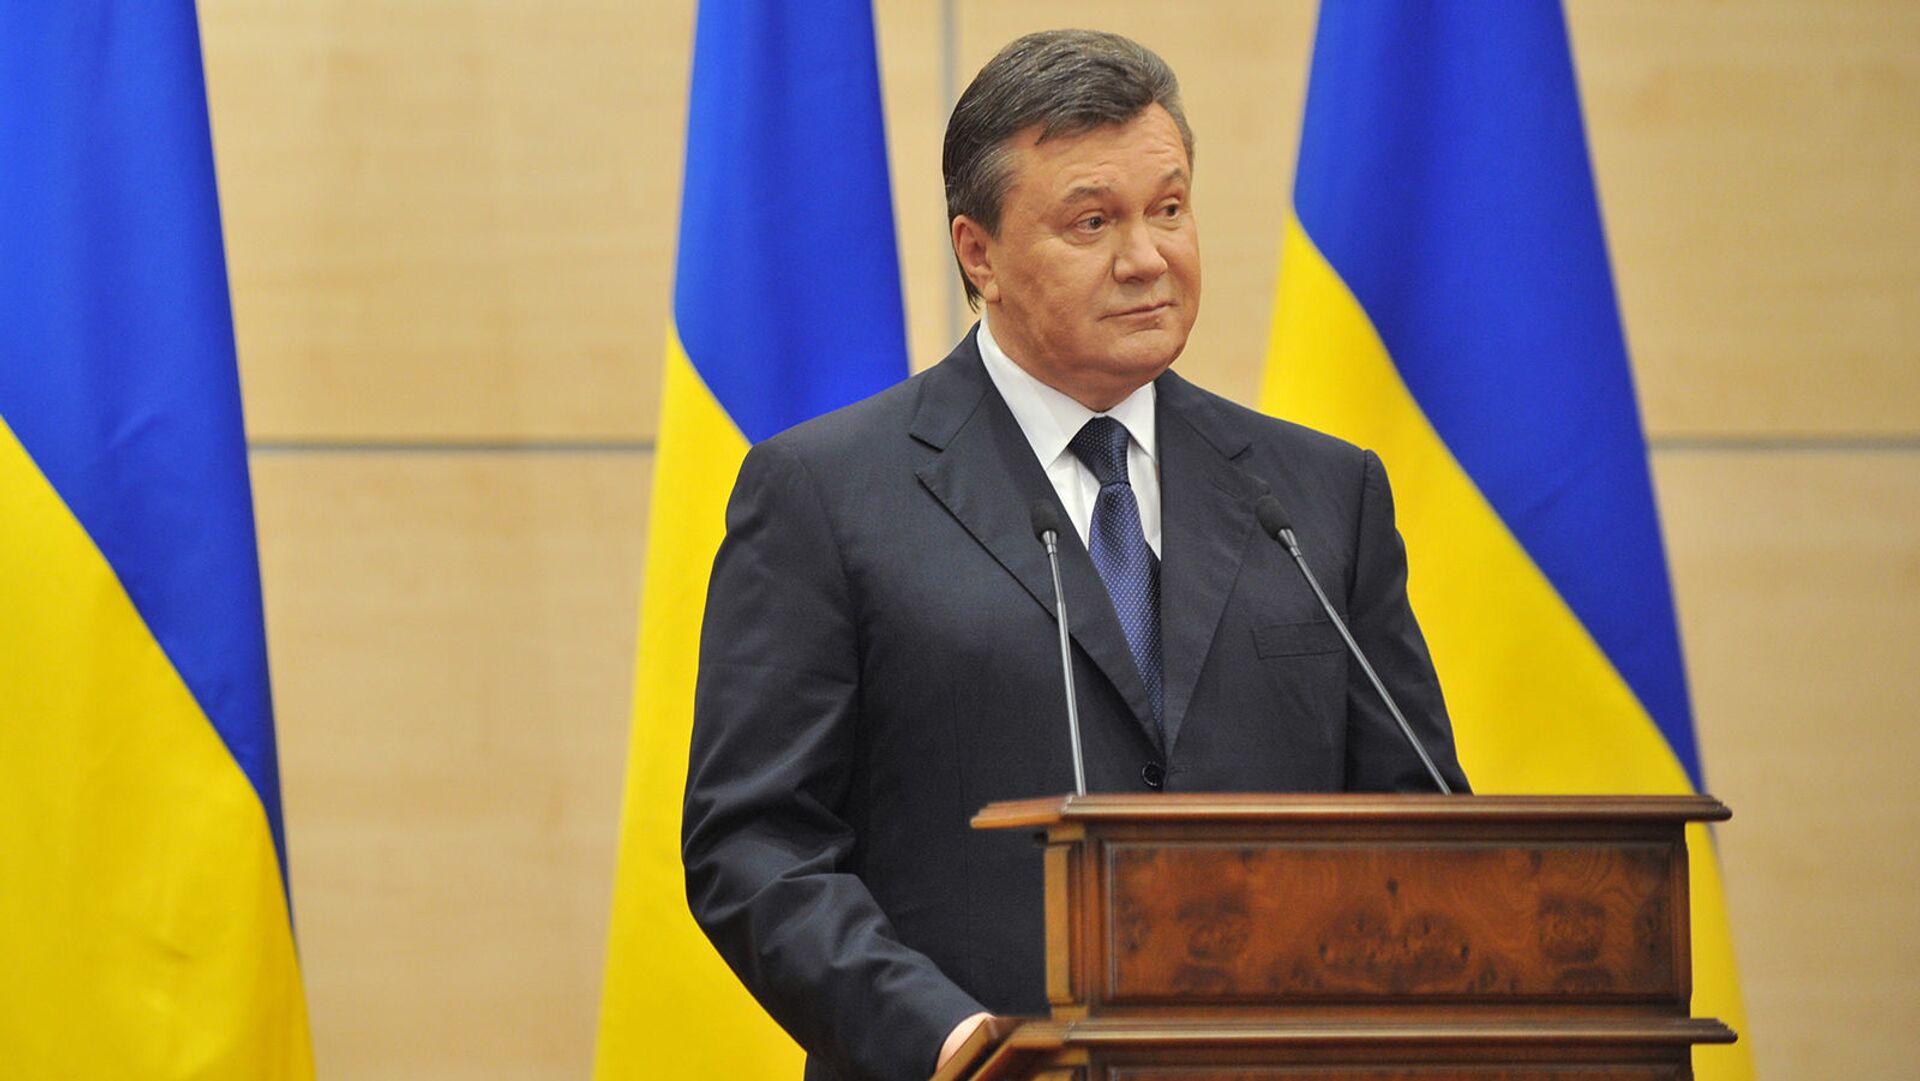 Виктор Янукович, объявивший себя ранее легитимным президентом Украины, выступает на пресс-конференции (11 марта 2014). Ростов-на-Дону - Sputnik Արմենիա, 1920, 17.08.2021